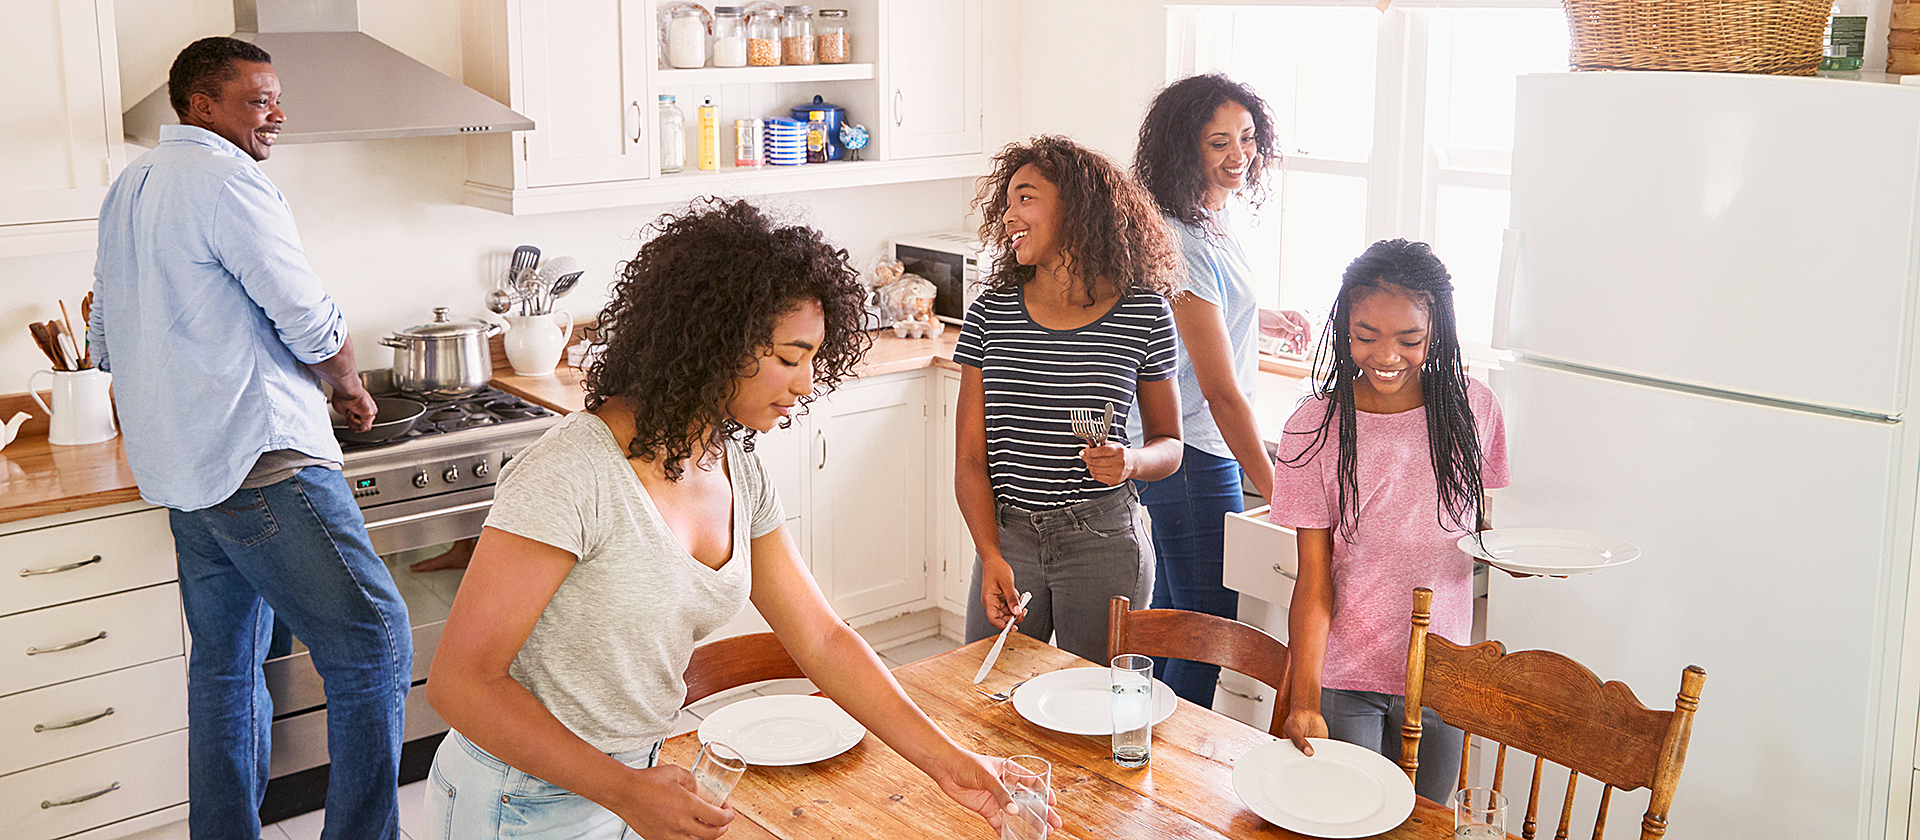 Una familia joven en una cocina poniendo la mesa.